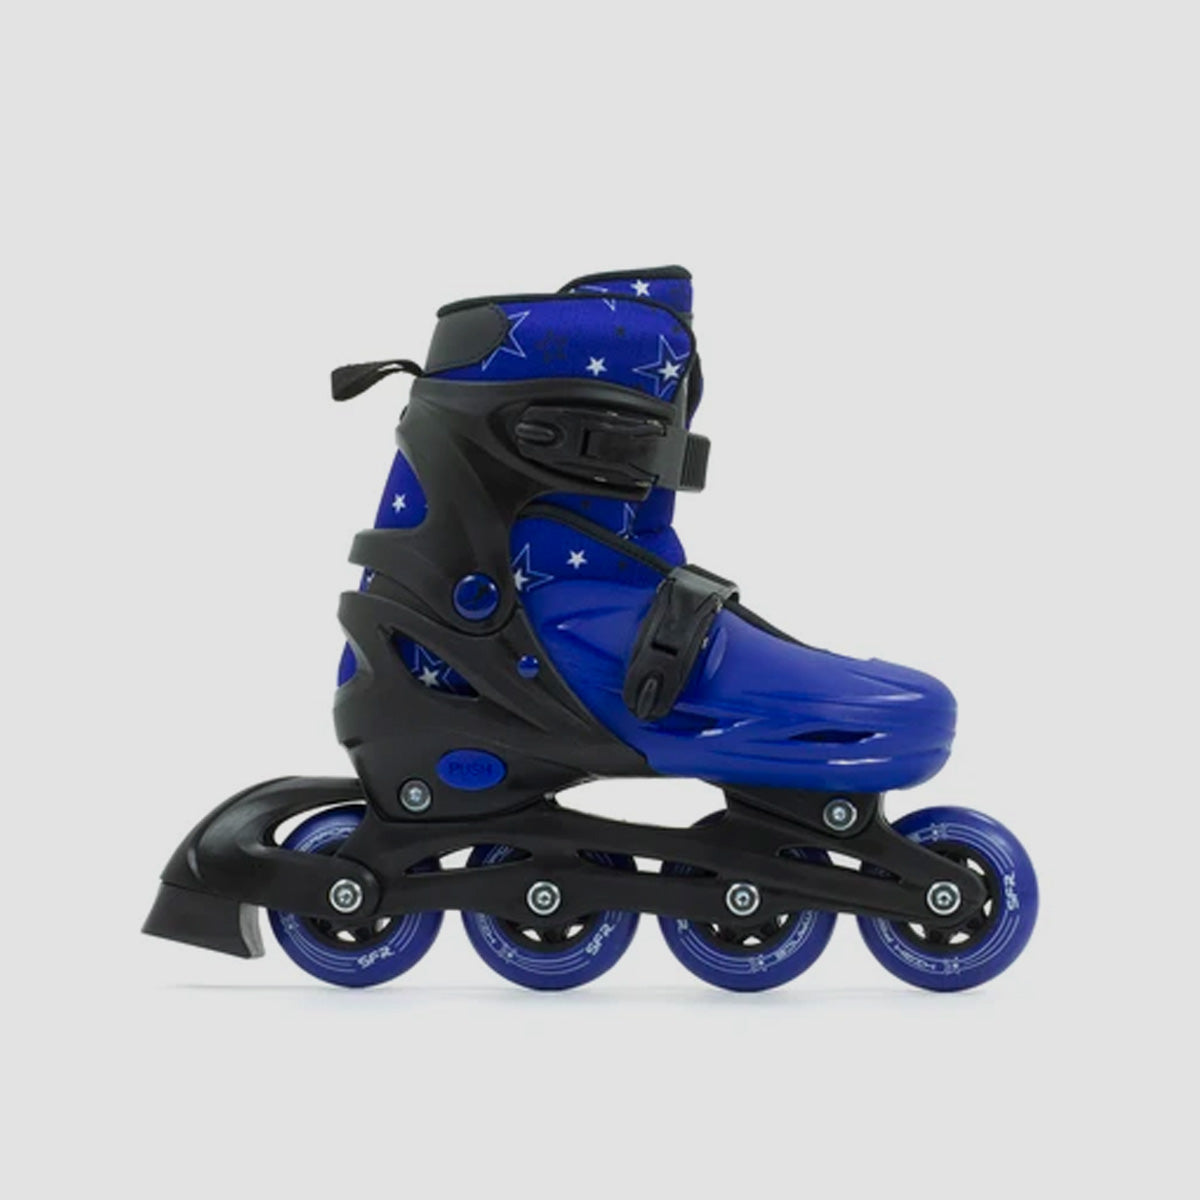 SFR Plasma Adjustable Recreational Skates Black/Blue - Kids